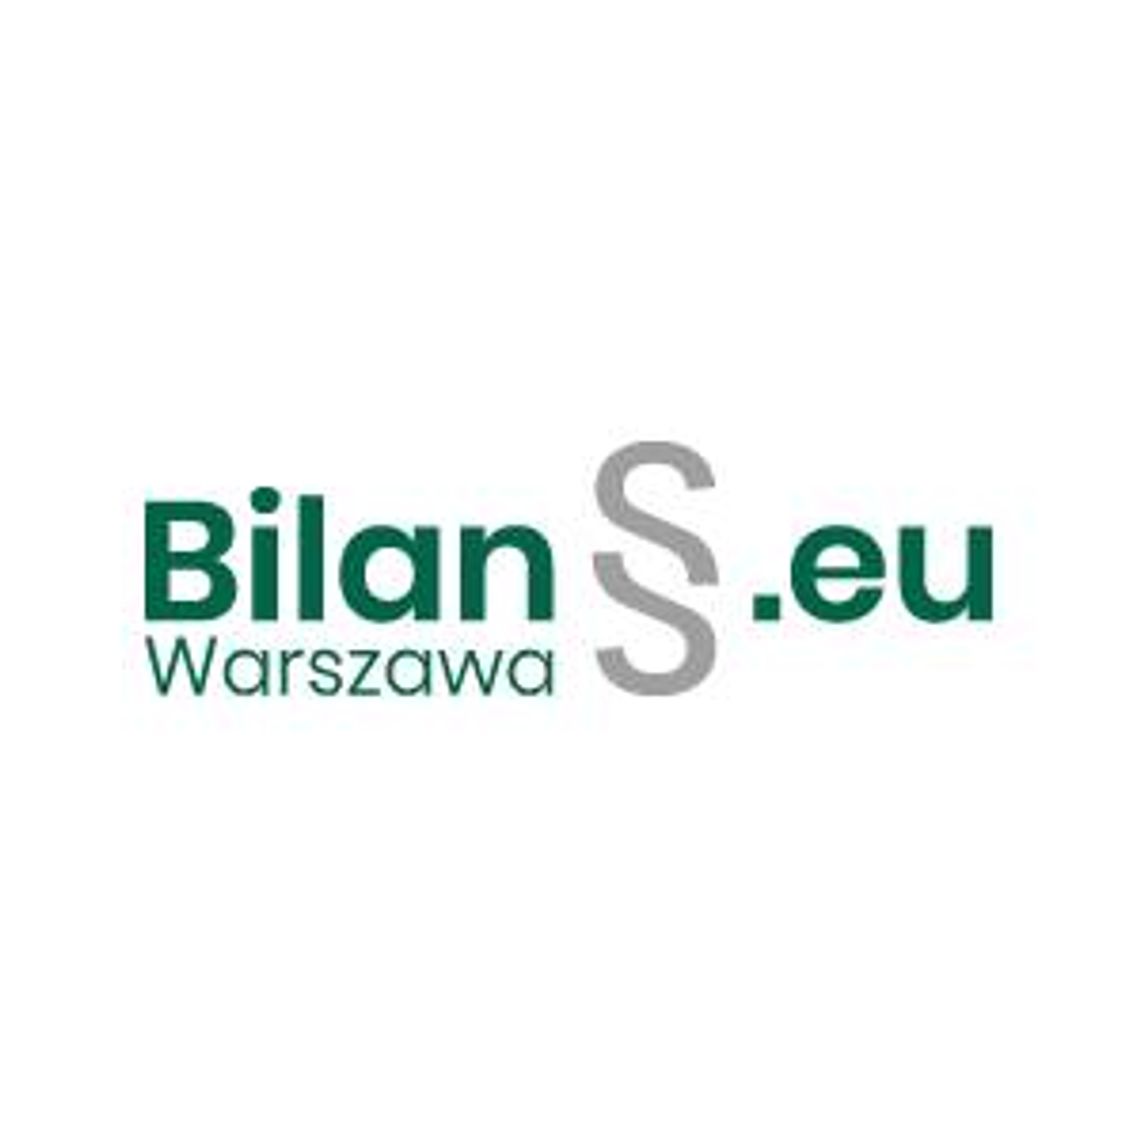 Usługi księgowe Warszawa - Bilans.eu